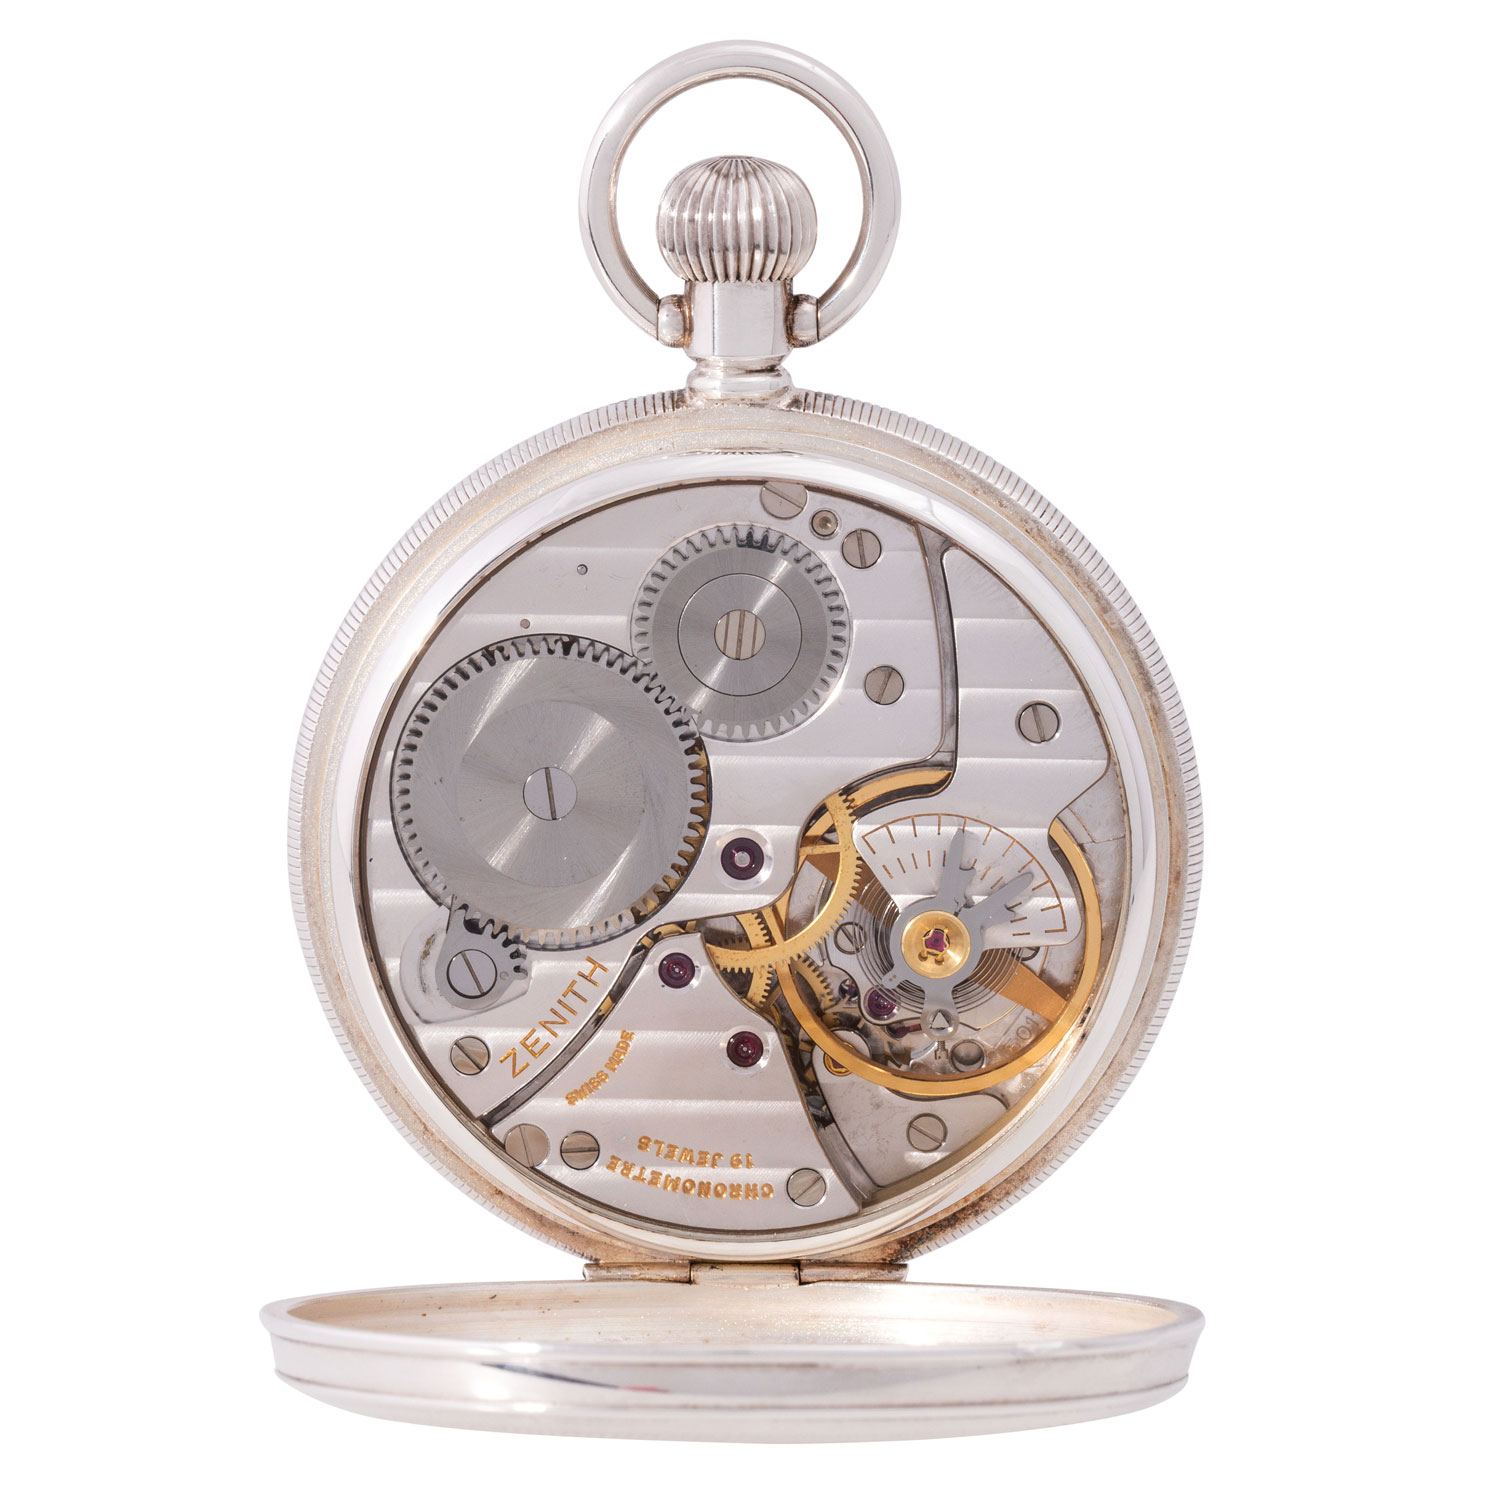 ZENITH Pocketmaster offenes Taschenuhr Chronometer, Ref. 07.0050.141 E. Aus 2002. - Image 3 of 7